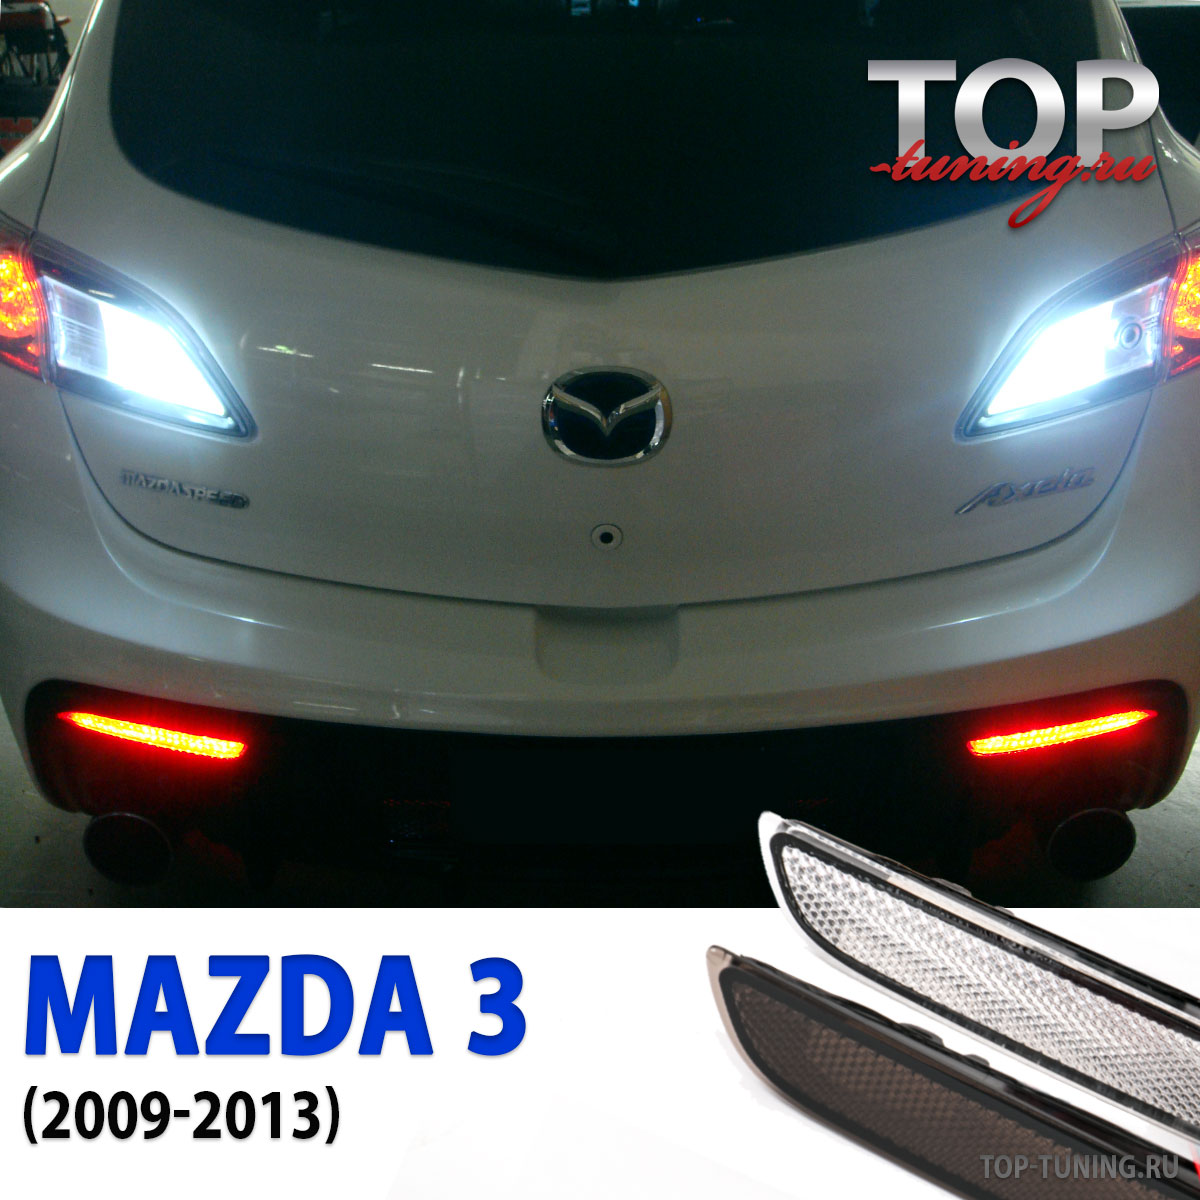 Купить задний фонарь для Mazda 3 + комплектующие в Москве. Цены и условия заказа на aikimaster.ru